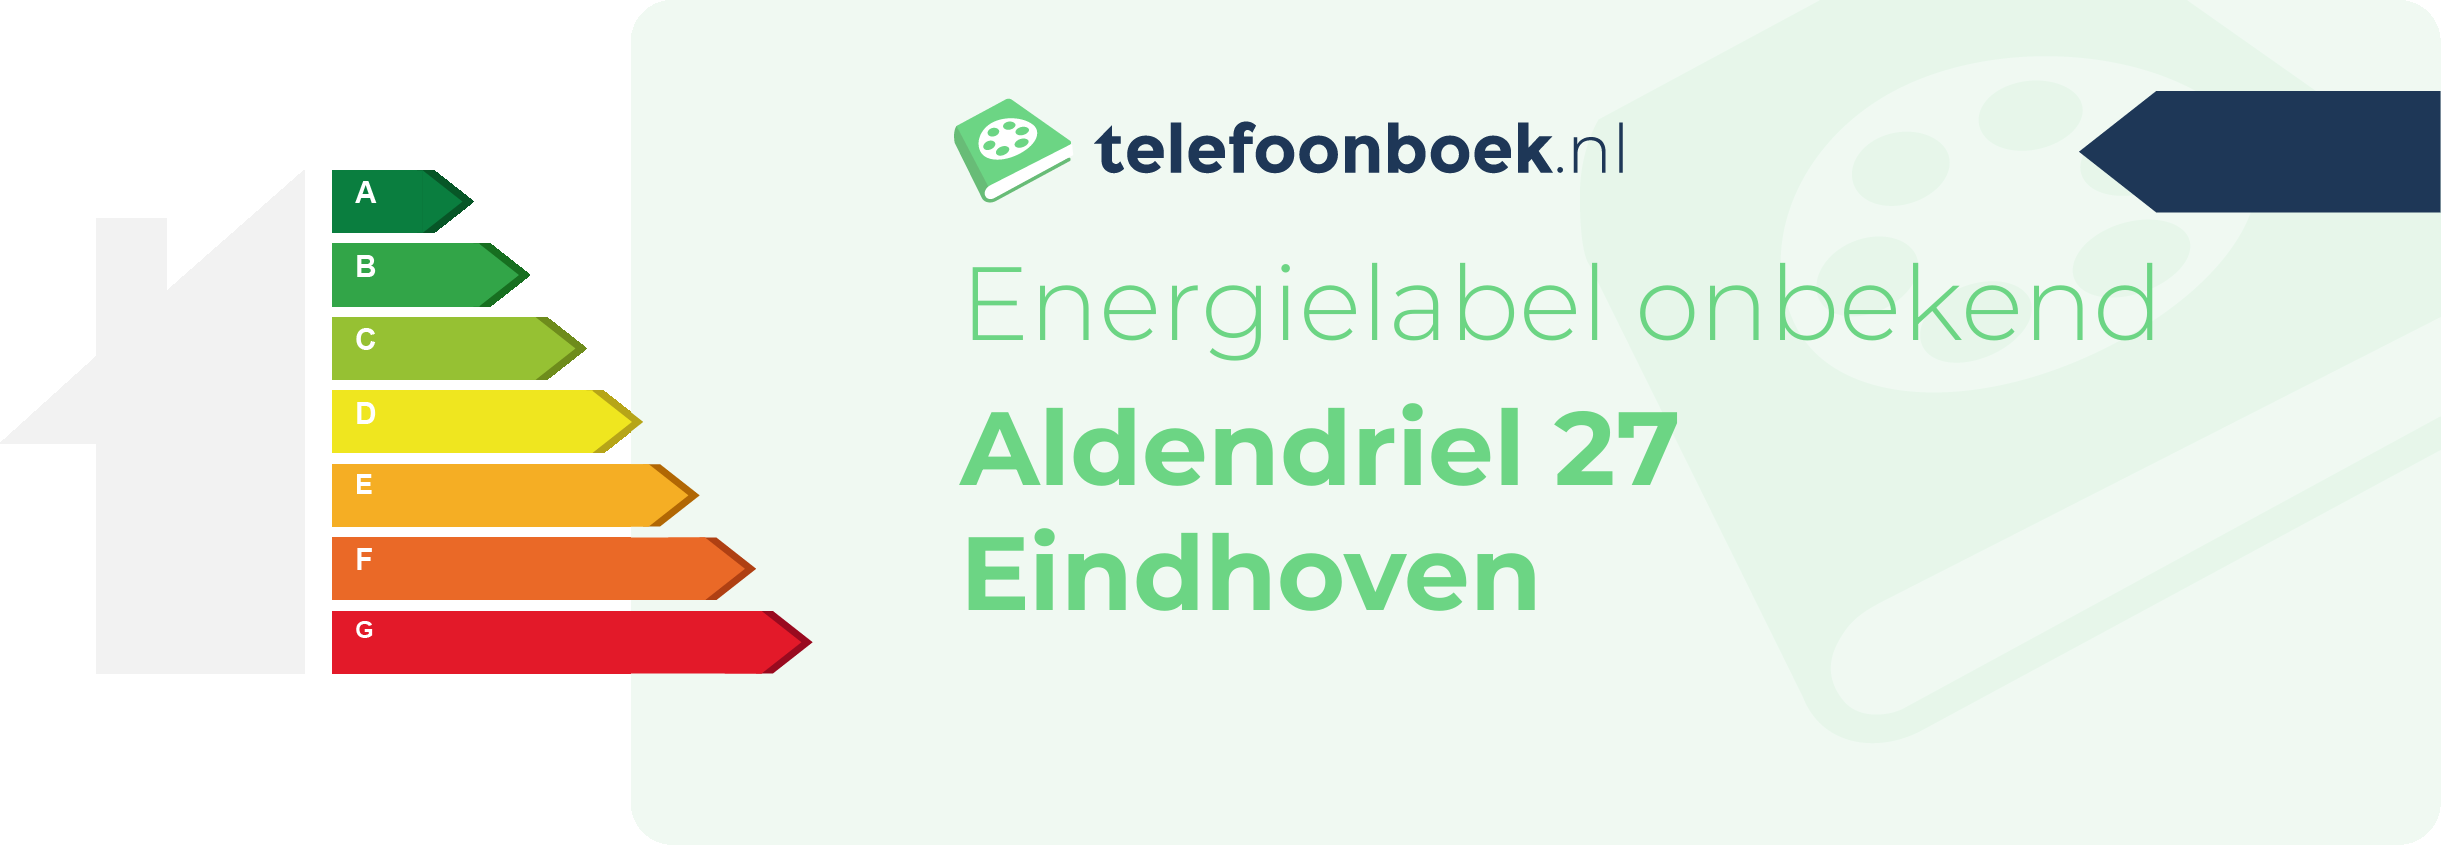 Energielabel Aldendriel 27 Eindhoven